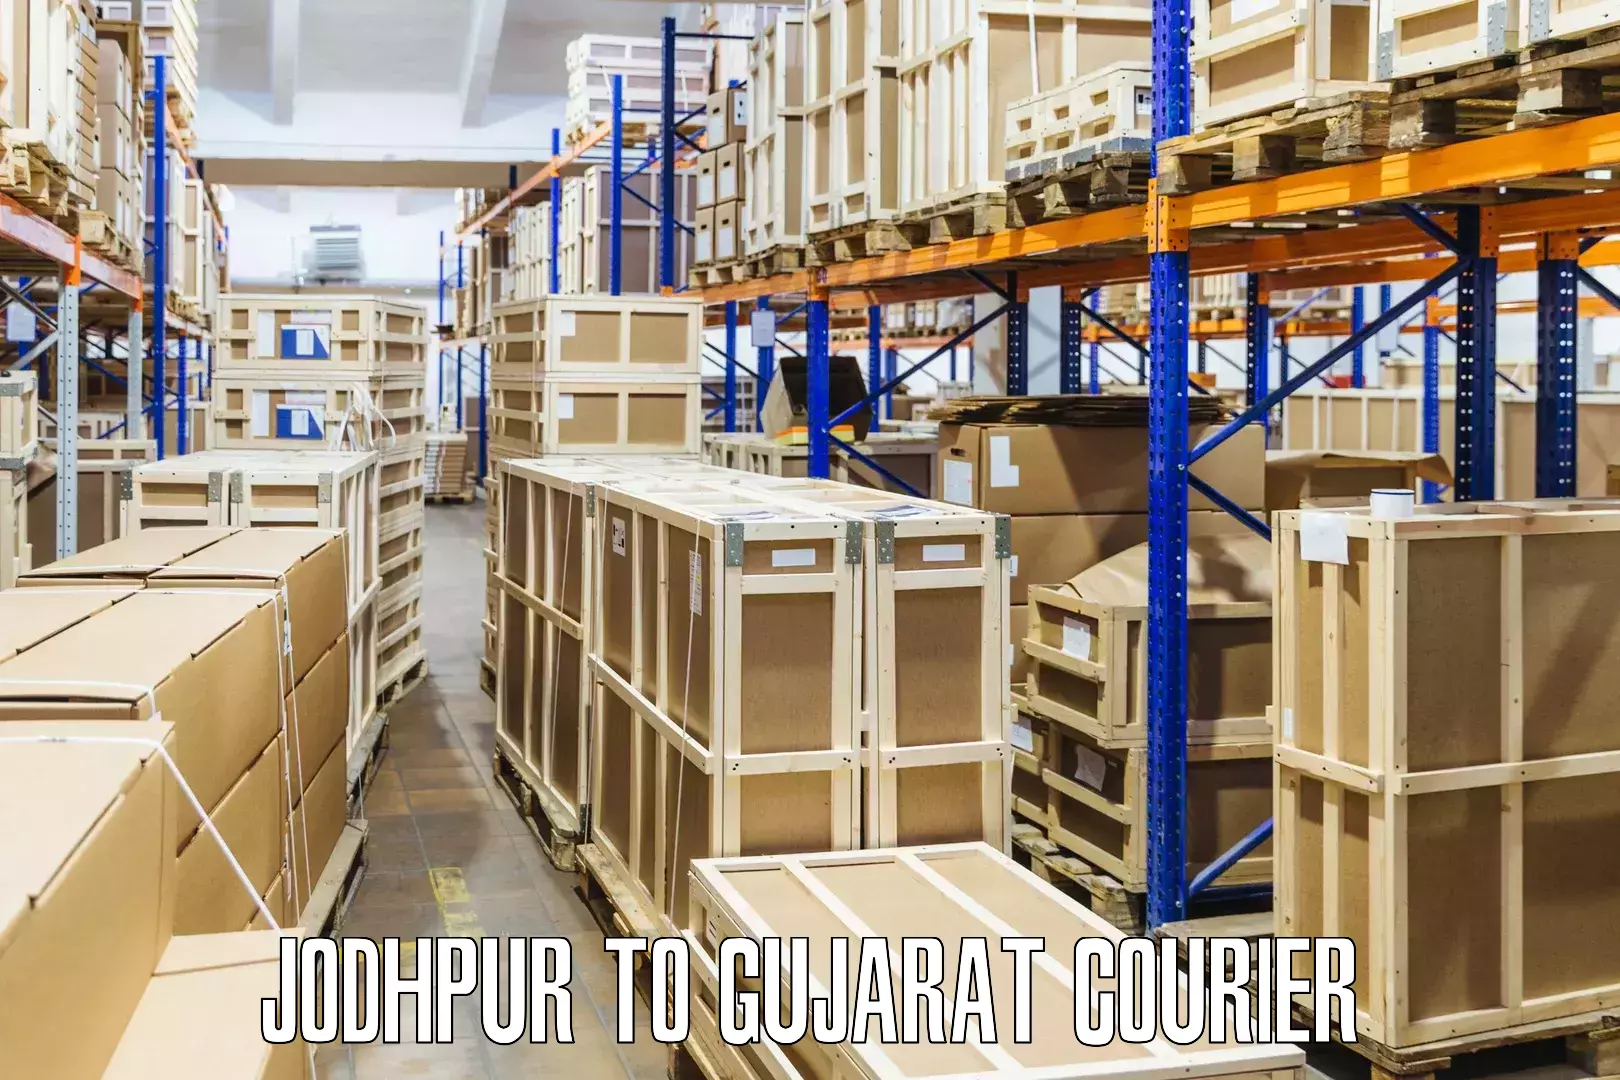 Nationwide shipping capabilities Jodhpur to Gandhidham